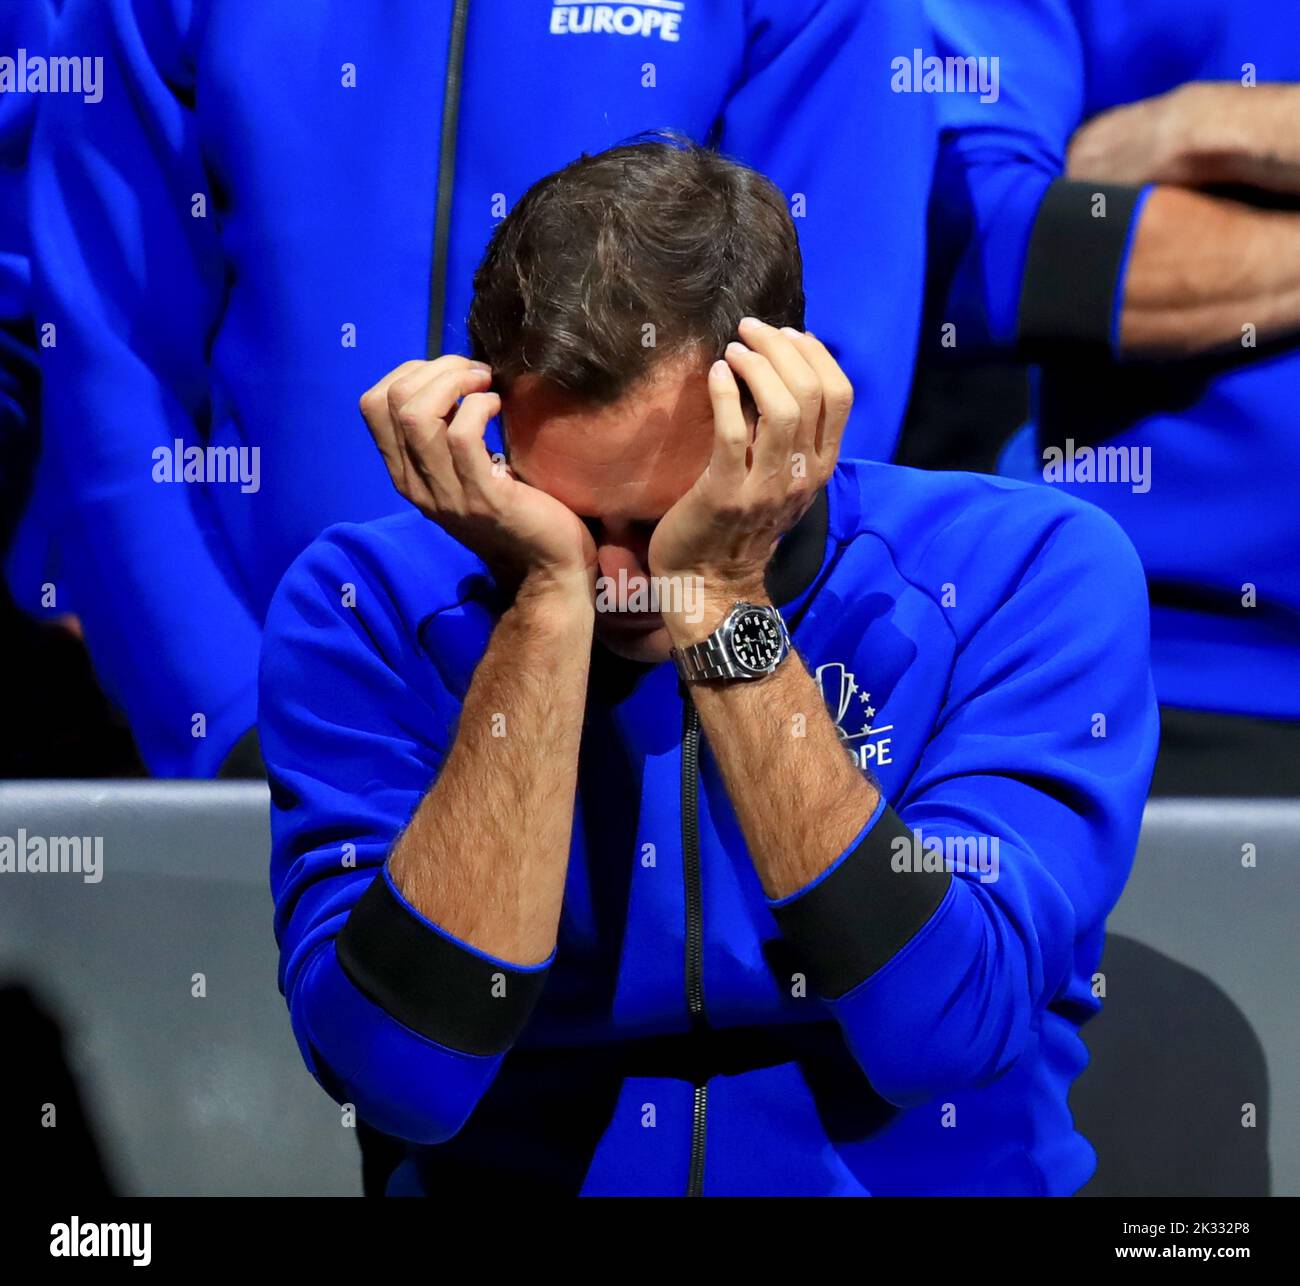 Londres, Grande-Bretagne. 24th septembre 2022. Le joueur suisse Roger Federer de Team Europe réagit à la fin de son dernier match après avoir annoncé sa retraite à la coupe du Laver à Londres, en Grande-Bretagne, le 24 septembre 2022. Crédit : Li Ying/Xinhua/Alay Live News Banque D'Images